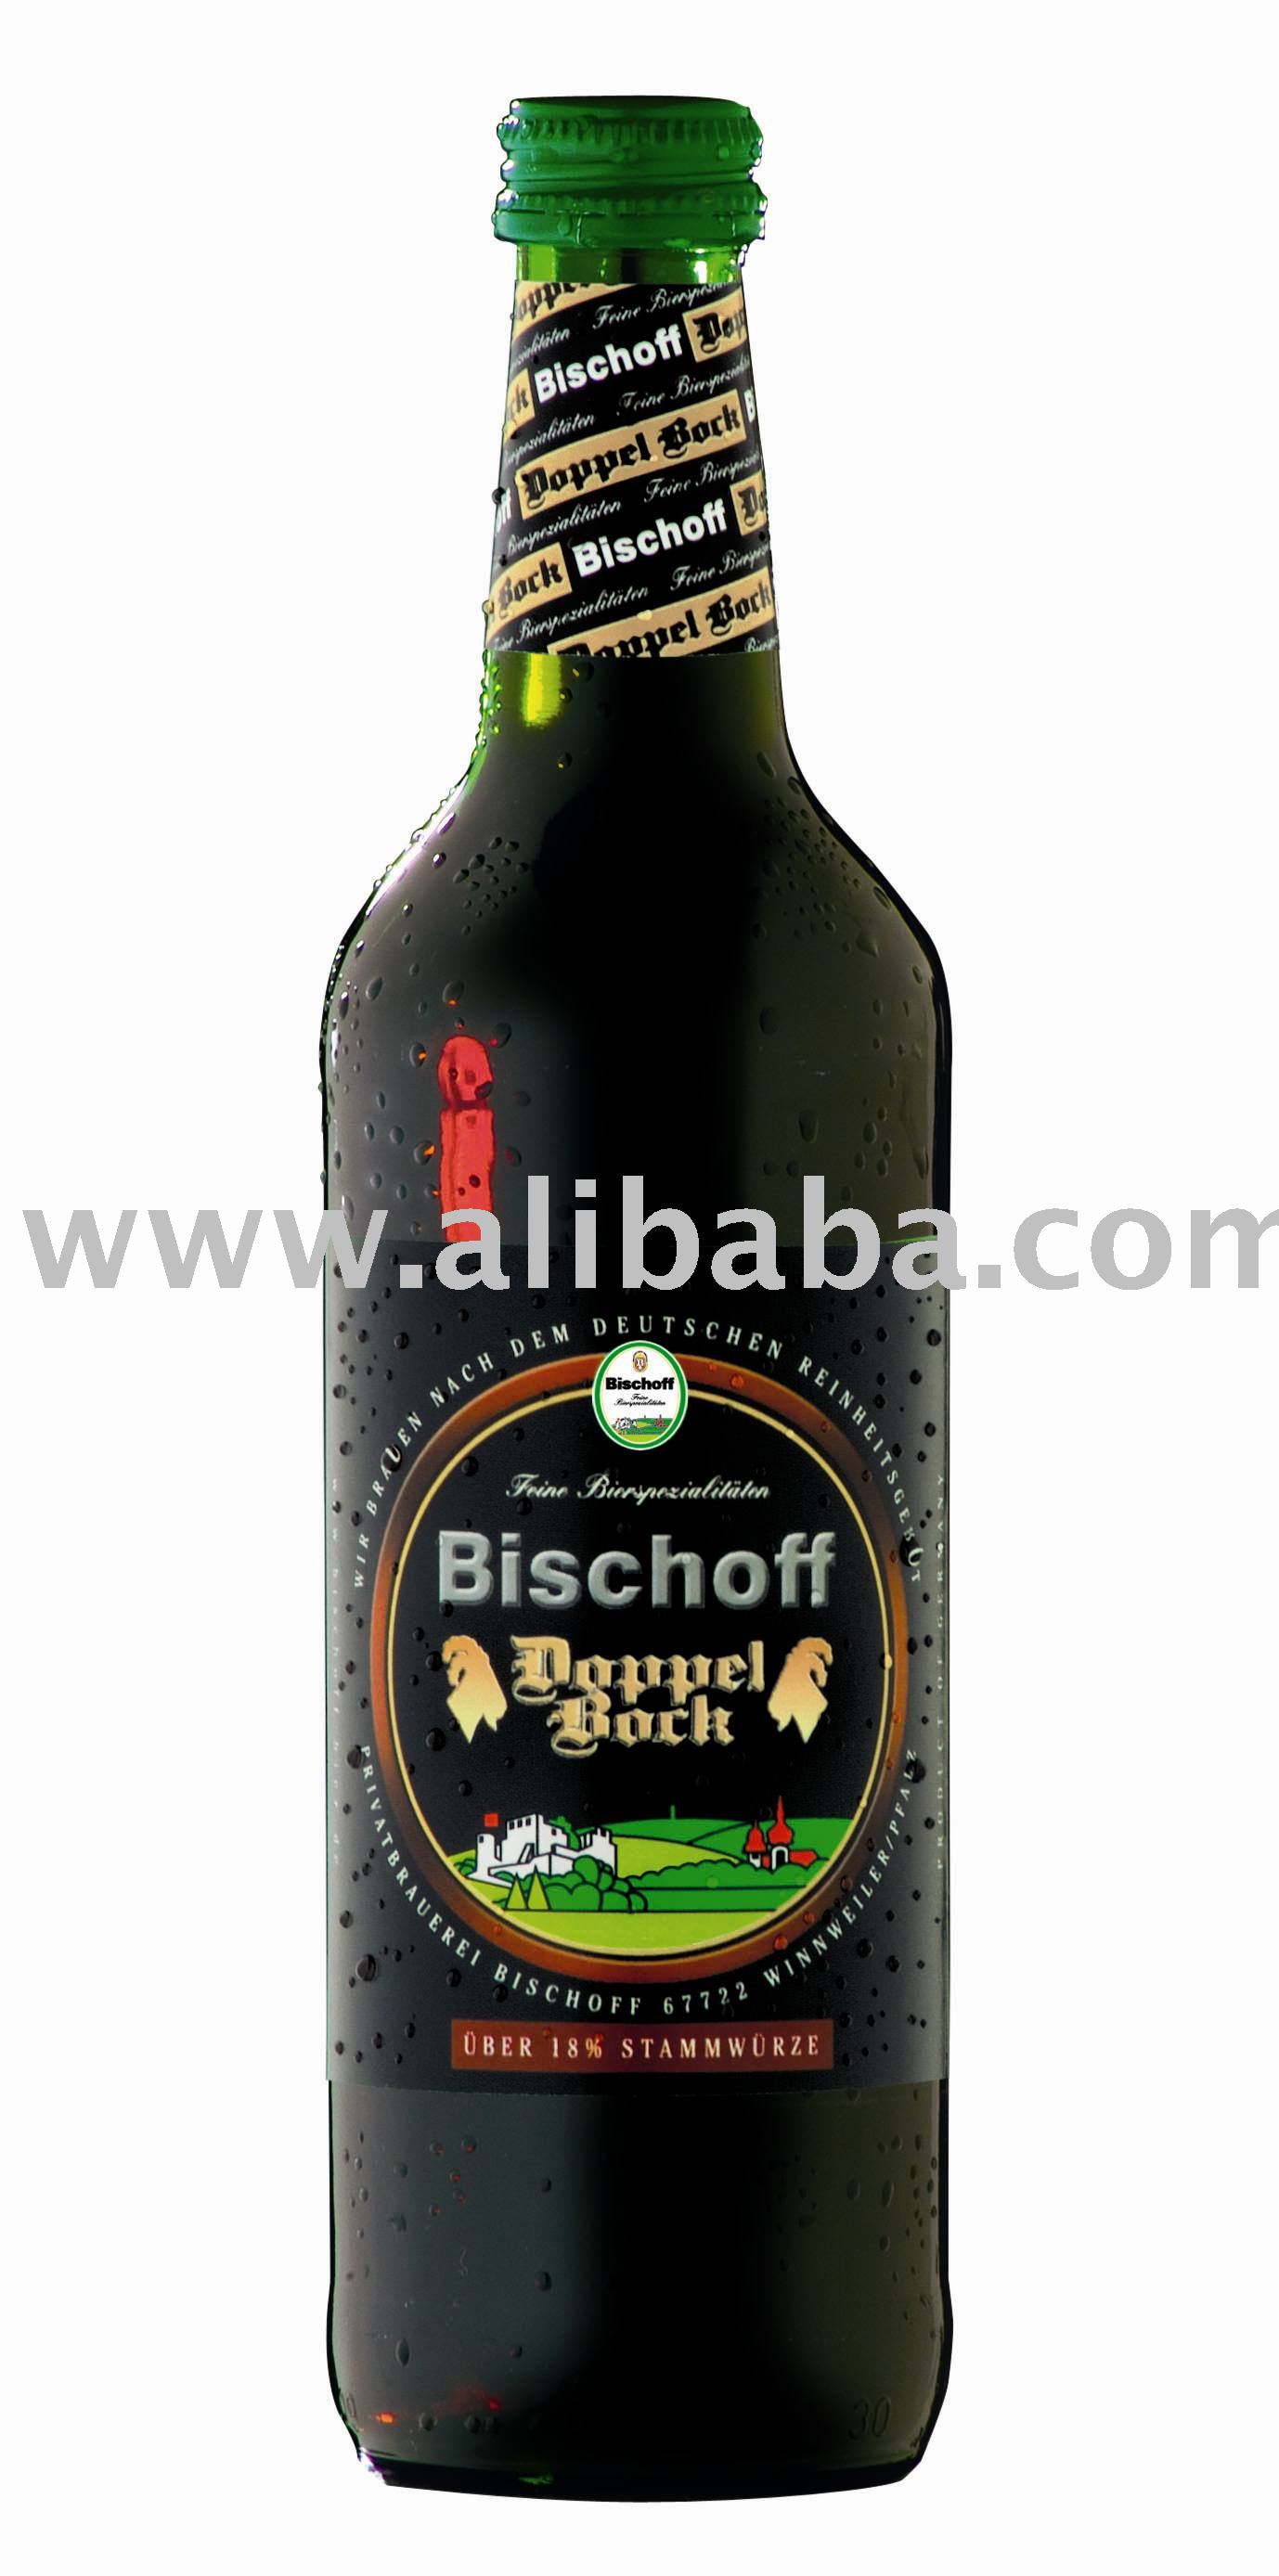 Bischoff Doppelbock - Bock beer